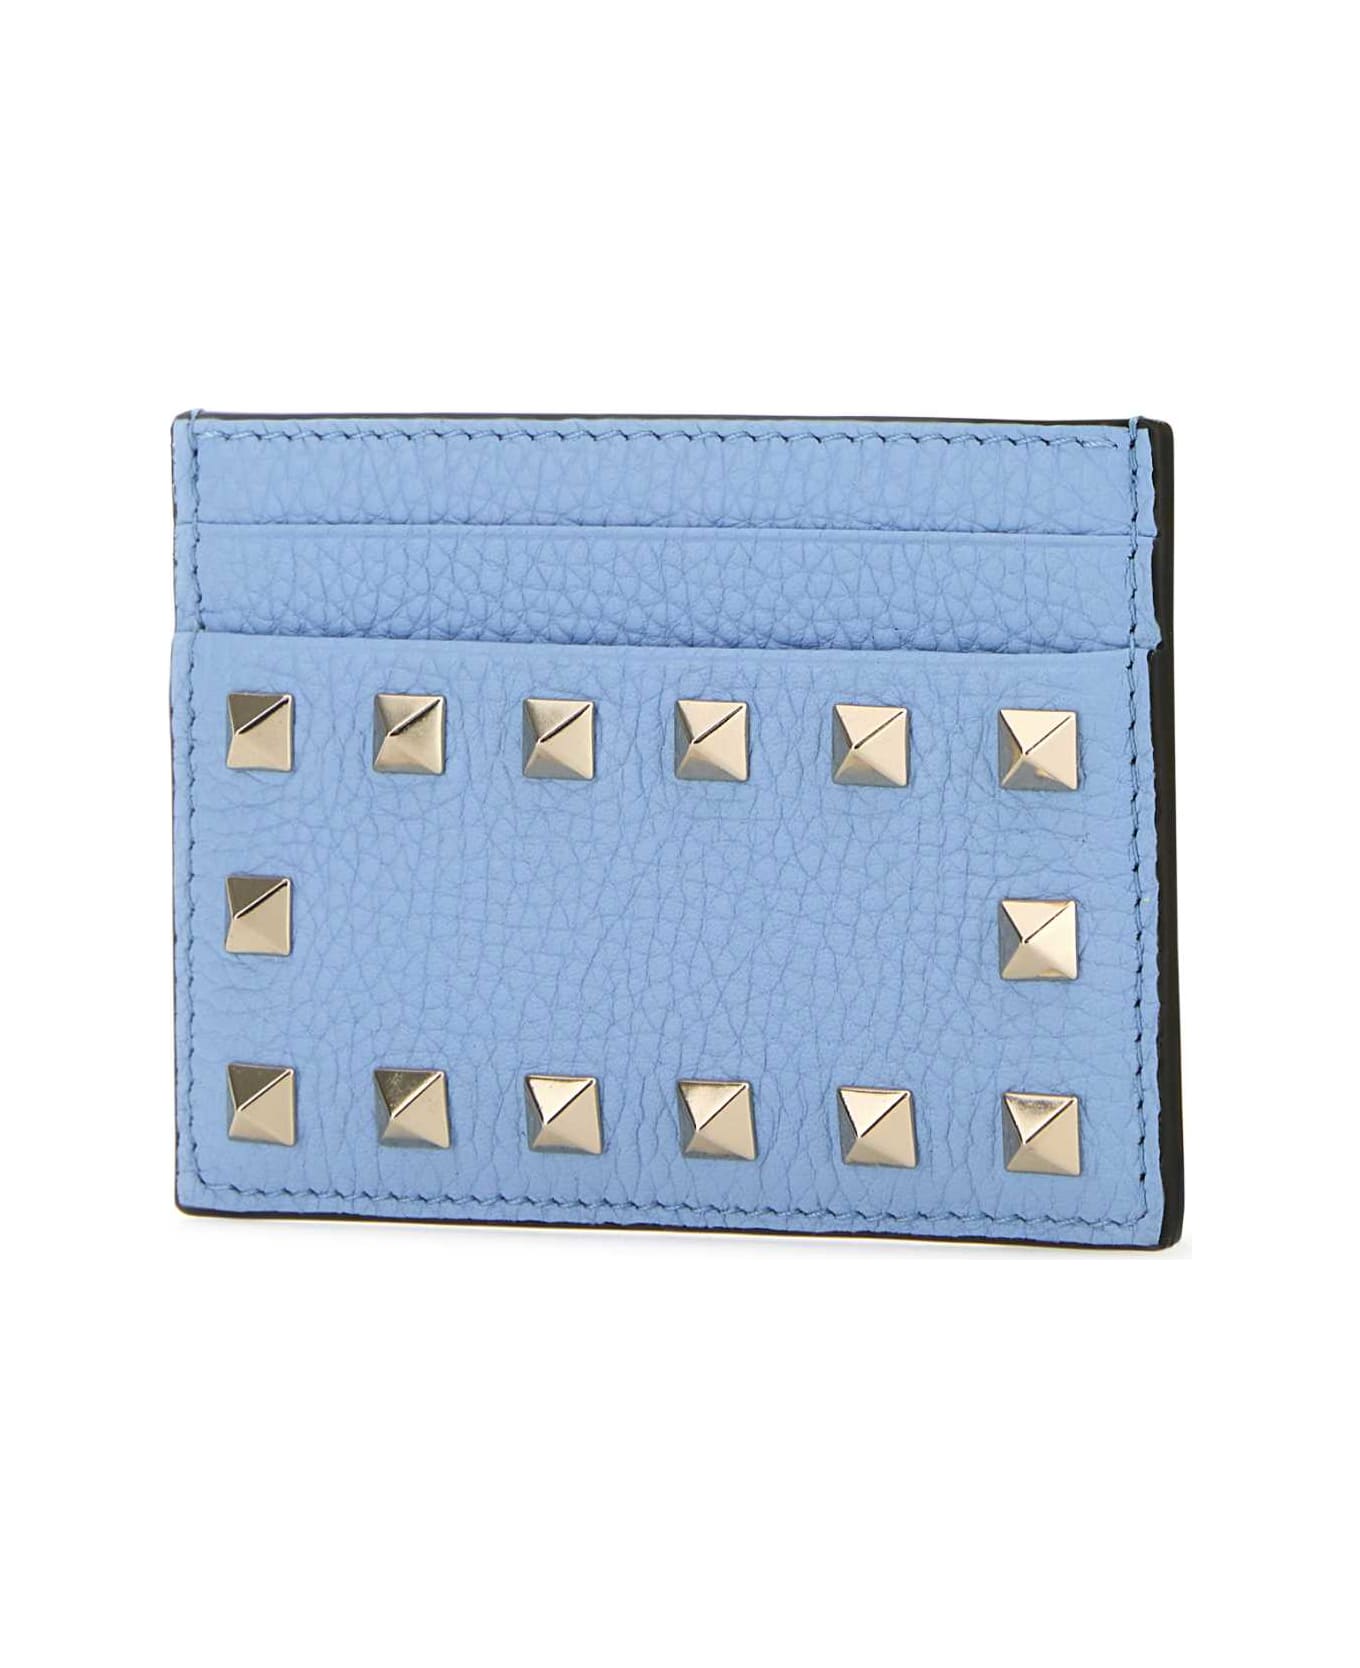 Valentino Garavani Light Blue Leather Rockstud Card Holder - POPELINEBLUE